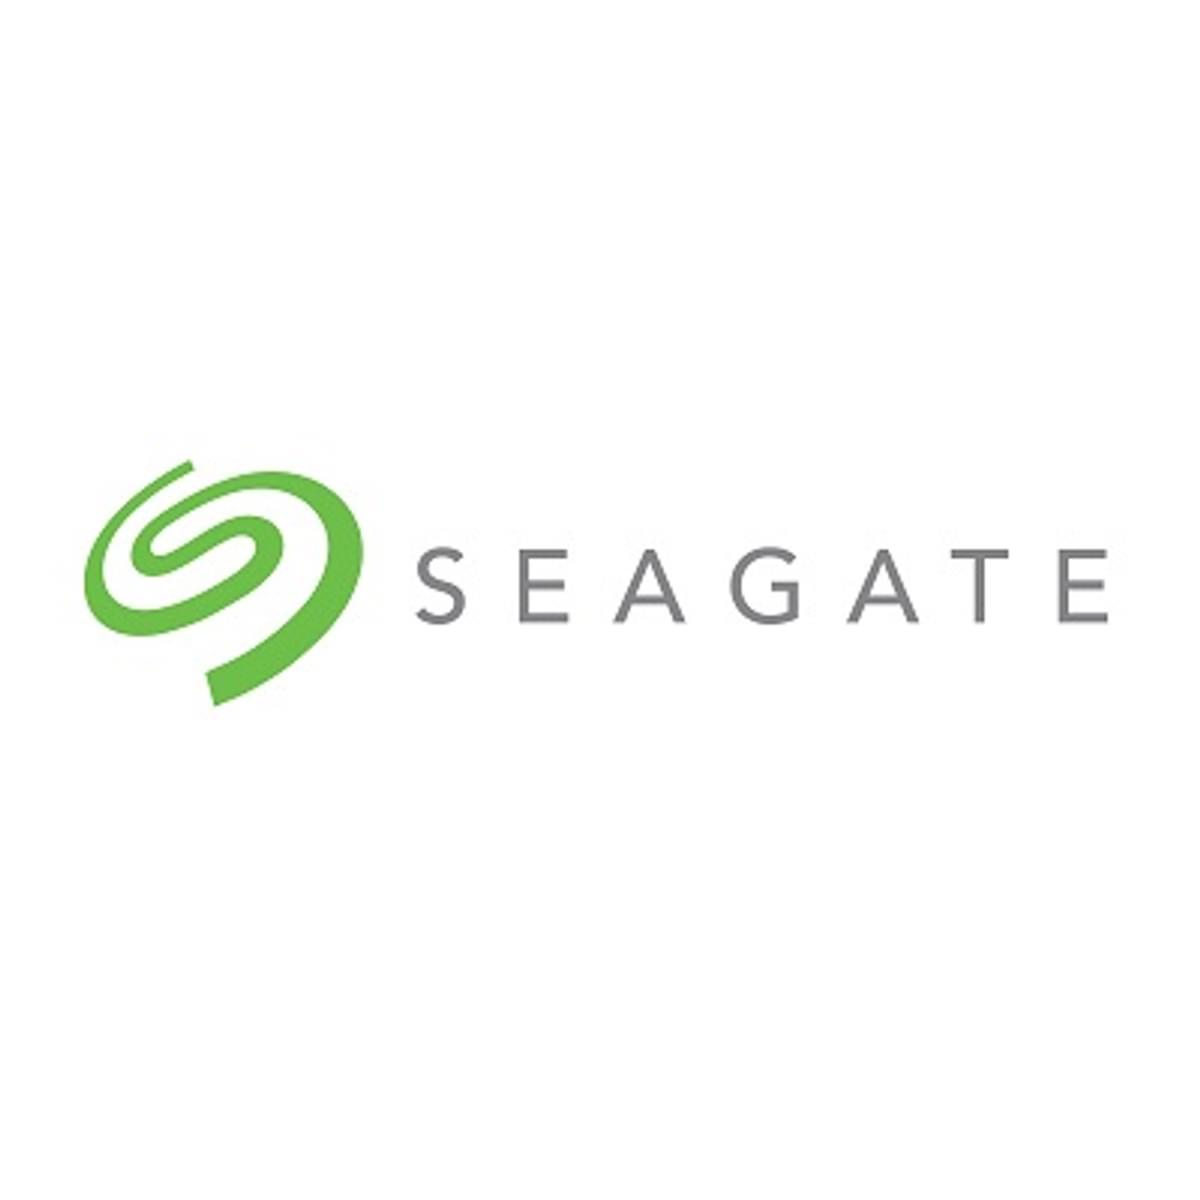 Seagate technologie in trek bij cloud datacenters image